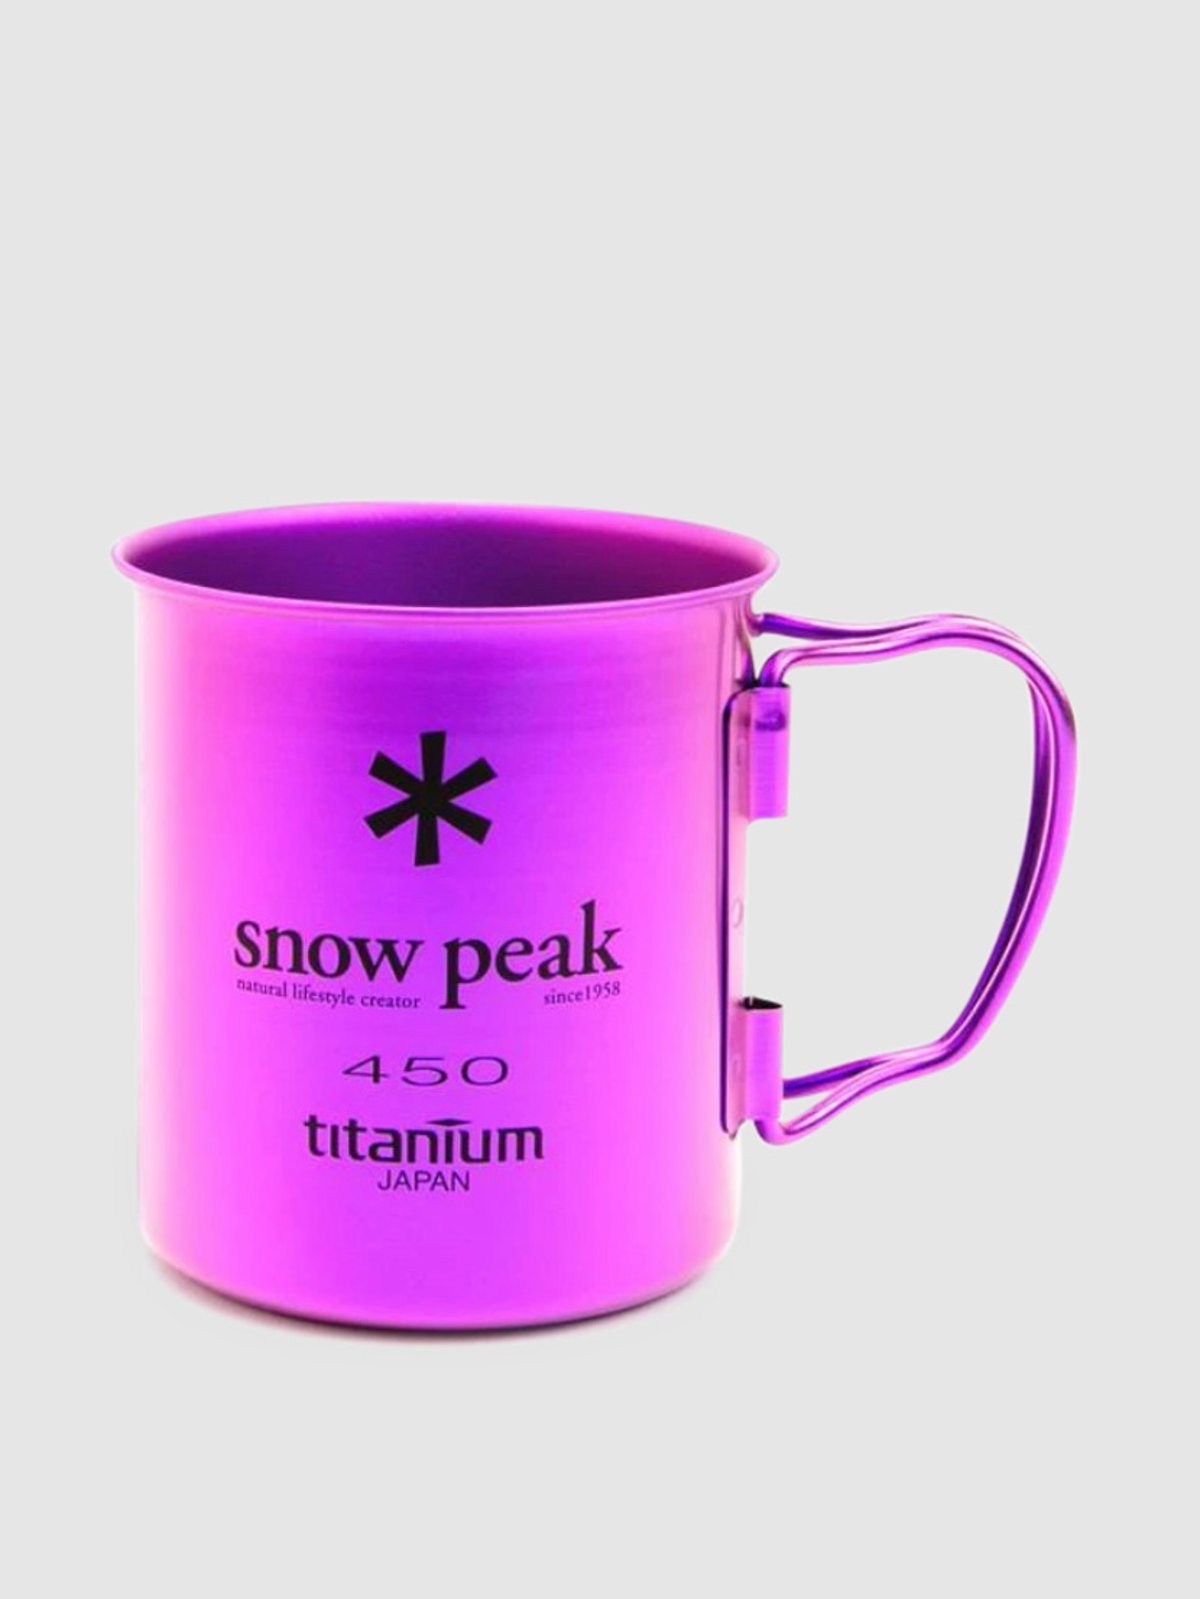 Snow Peak Titanium Single Cup 450 | Verishop